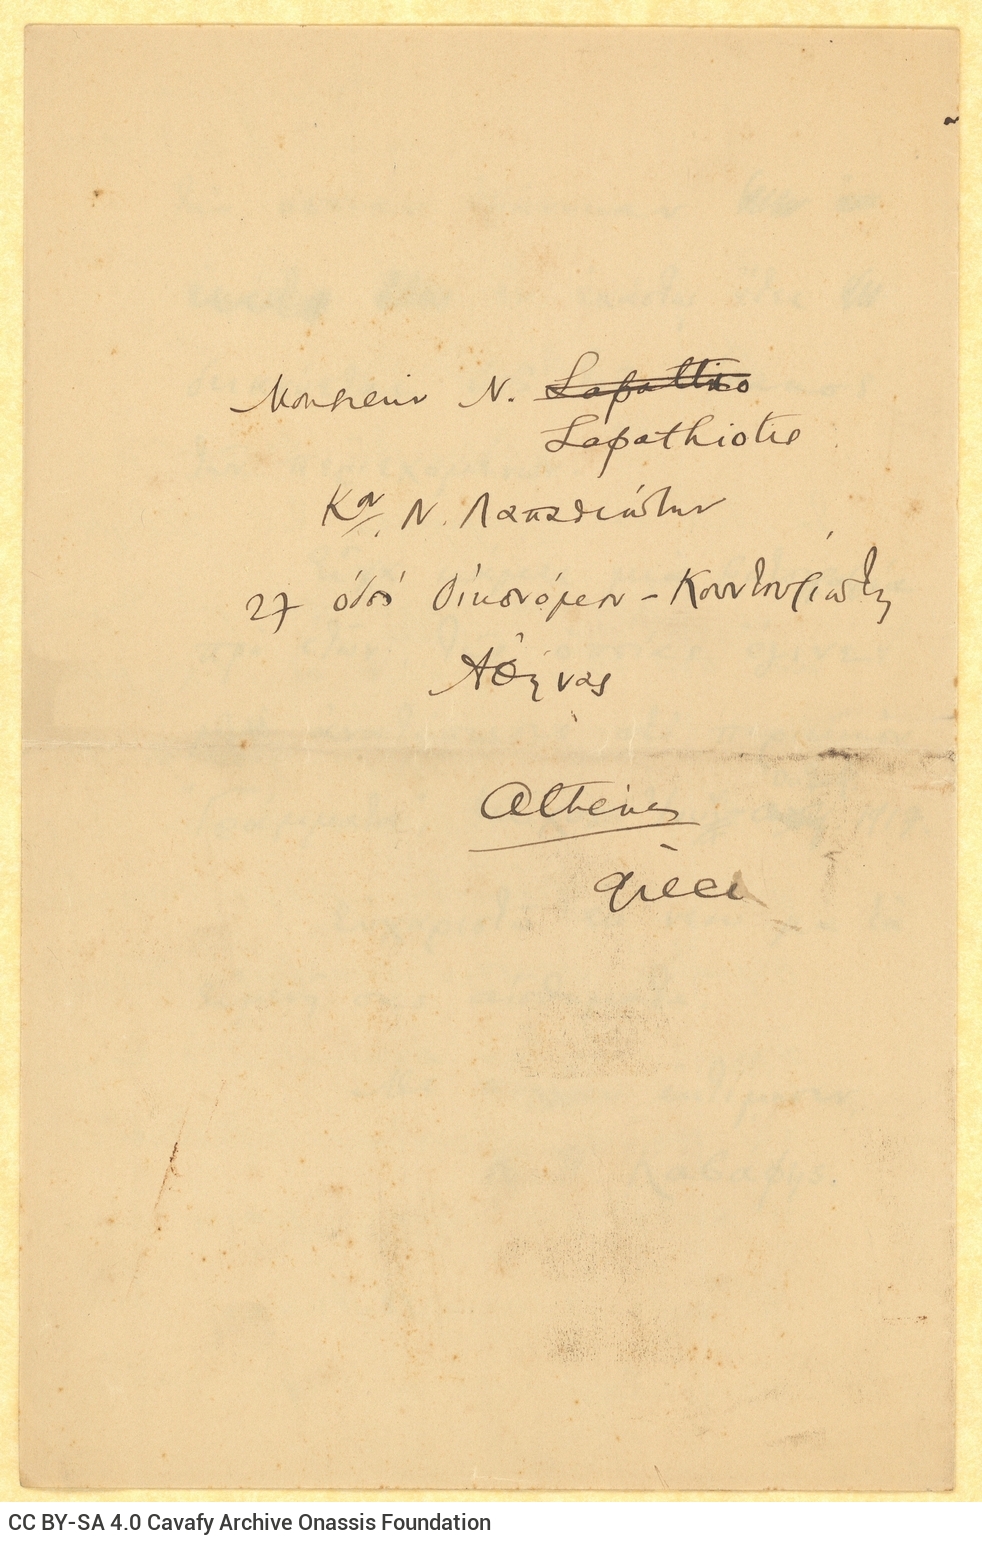 Υπογεγραμμένο χειρόγραφο αντίγραφο επιστολής του Καβάφη προς τον Ν�